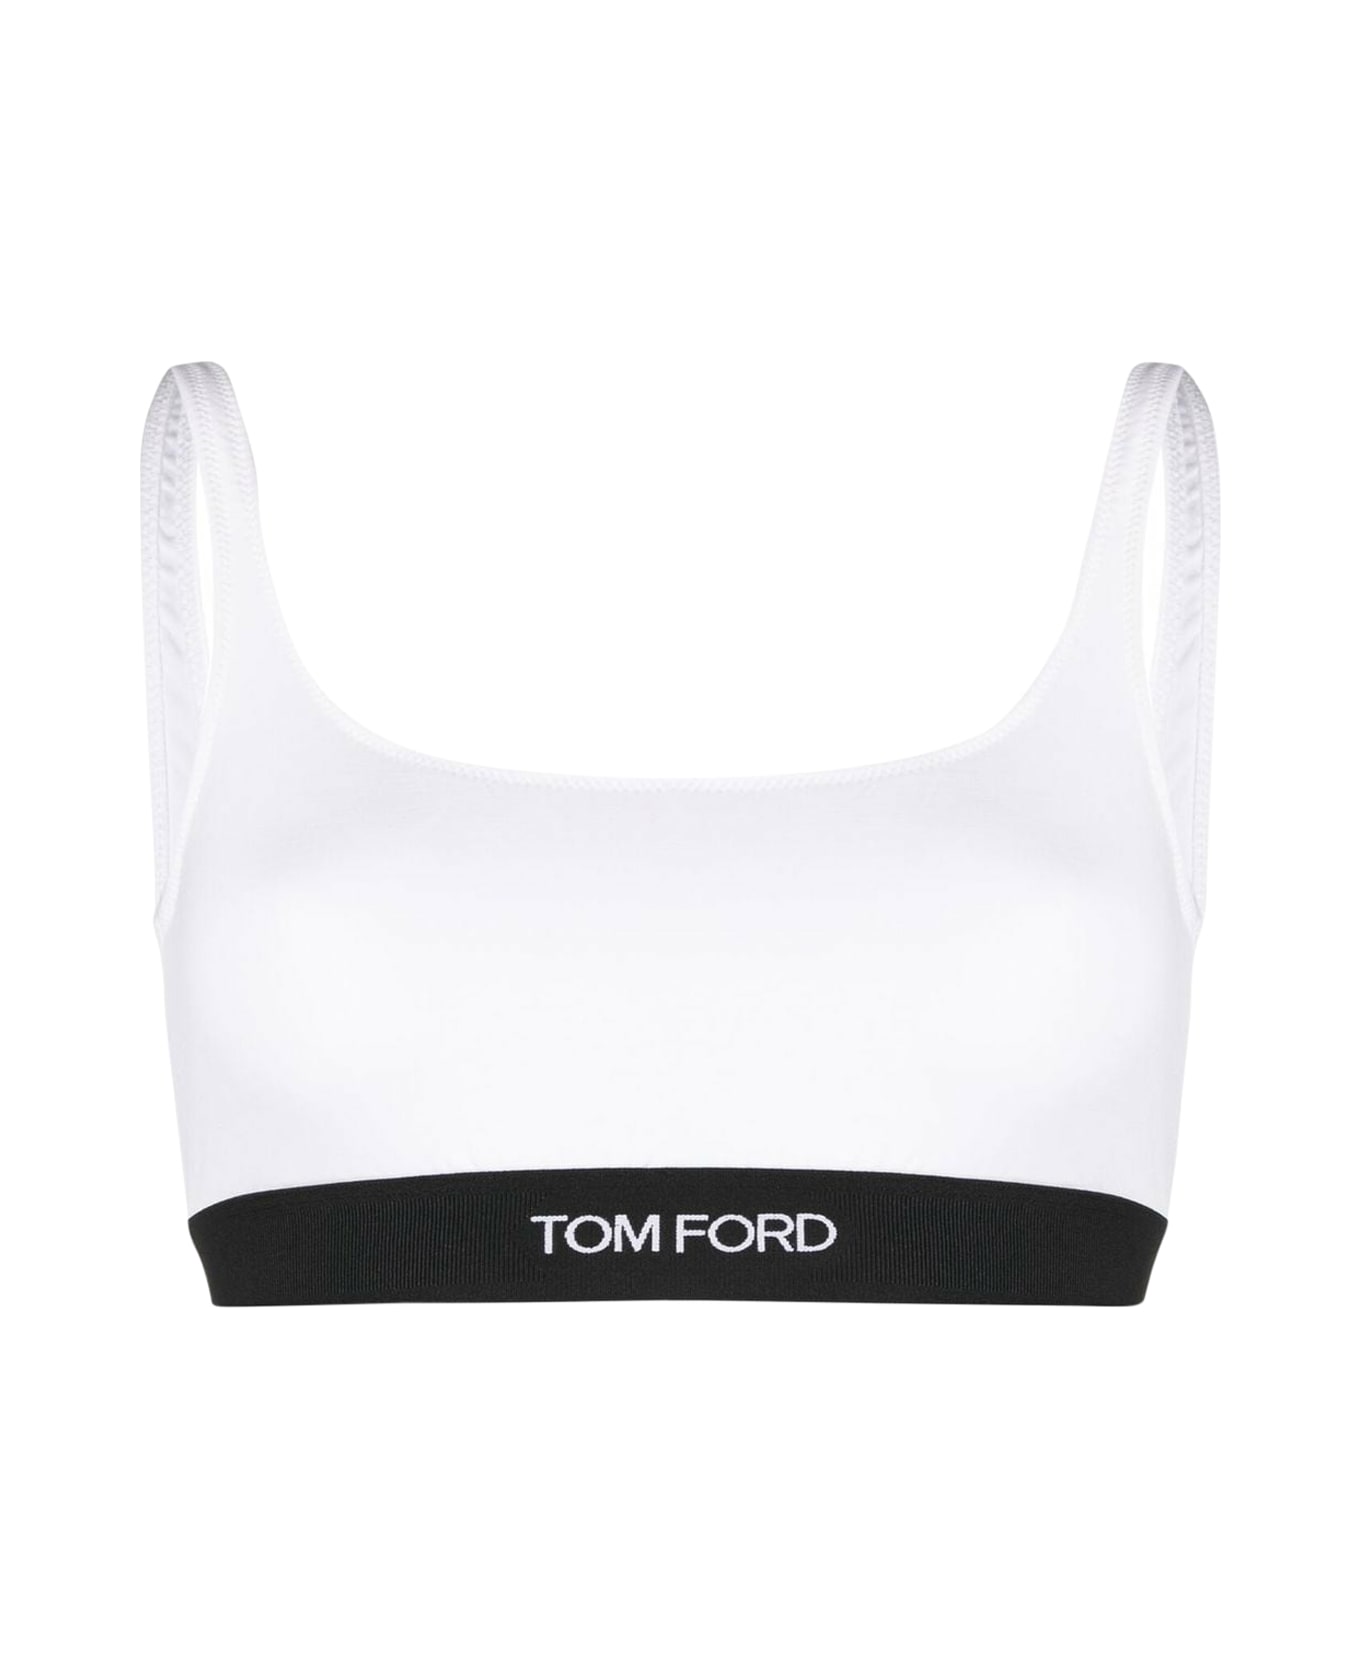 Tom Ford Modal Signature Bralette - White